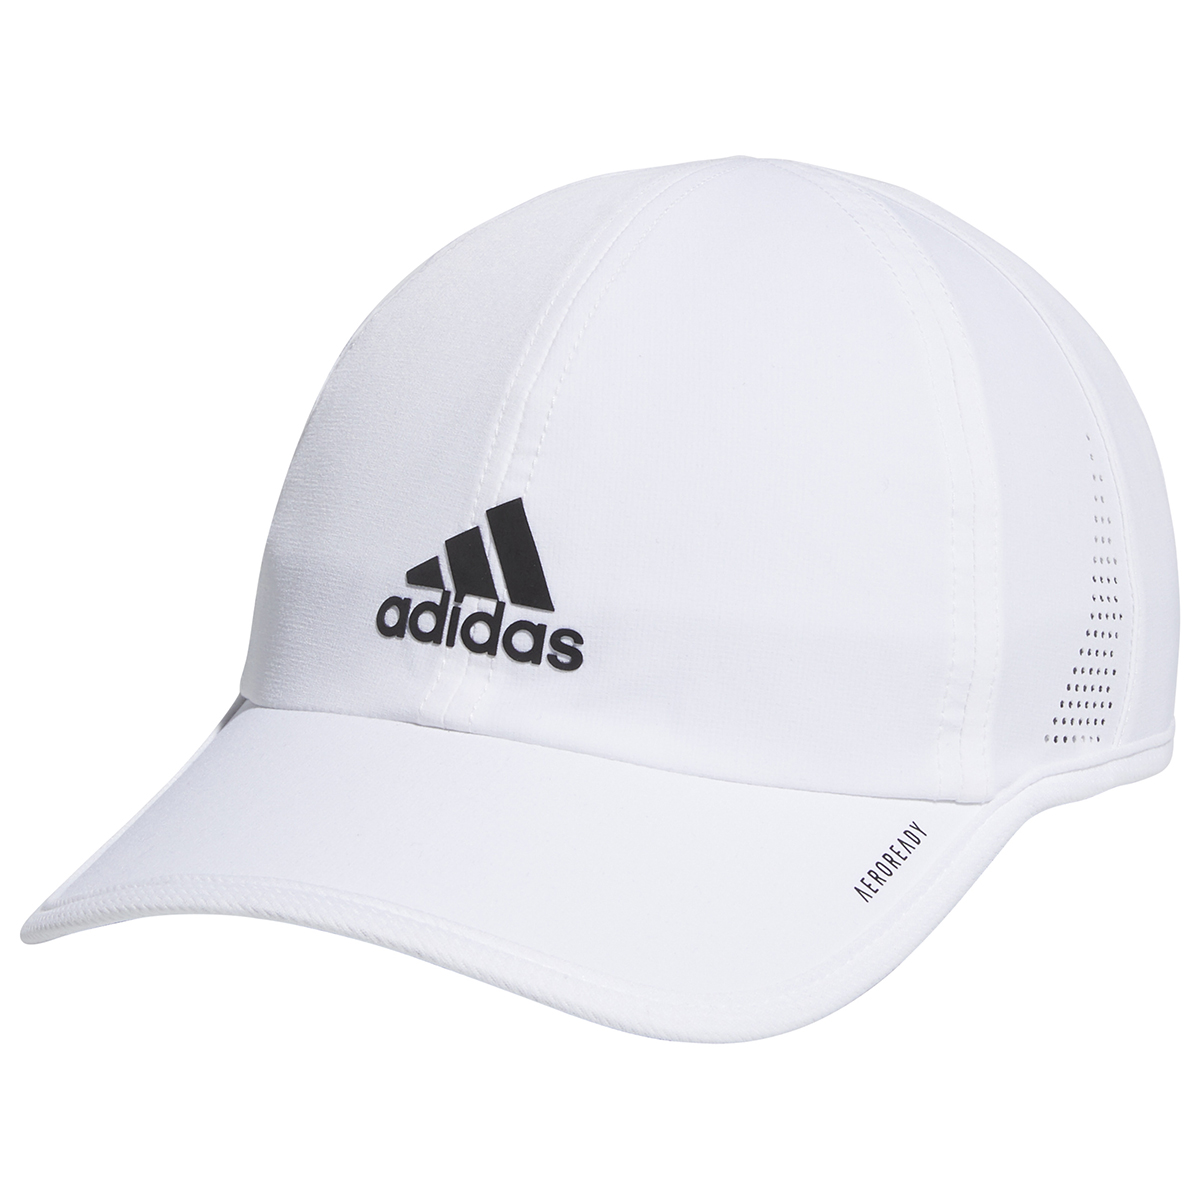 Adidas Men's Superlite 2 Cap